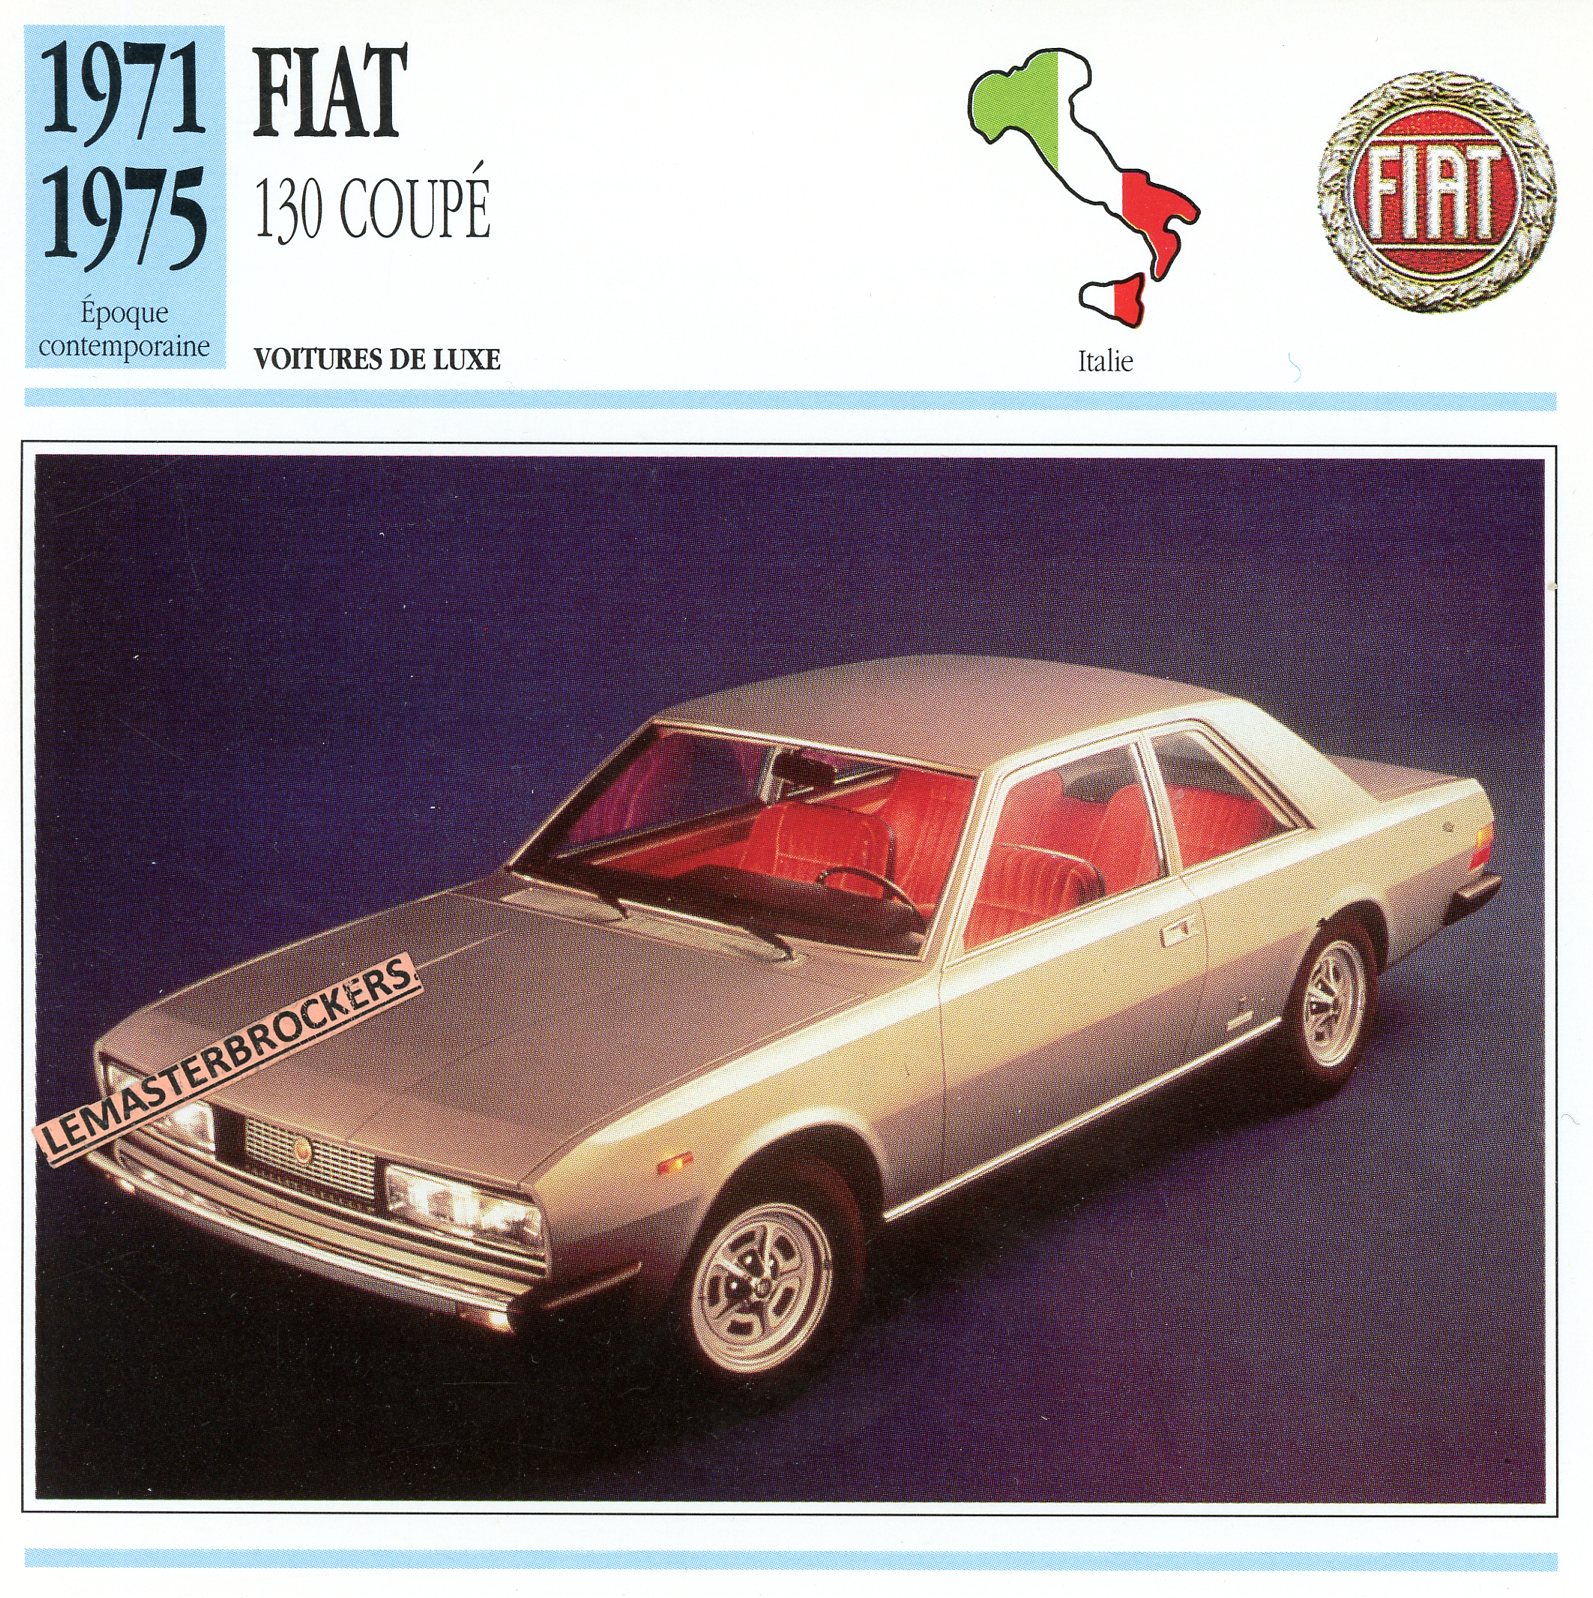 FICHE-FIAT-130-COUPÉ-1975-CARD-CARS-LEMASTERBROCKERS